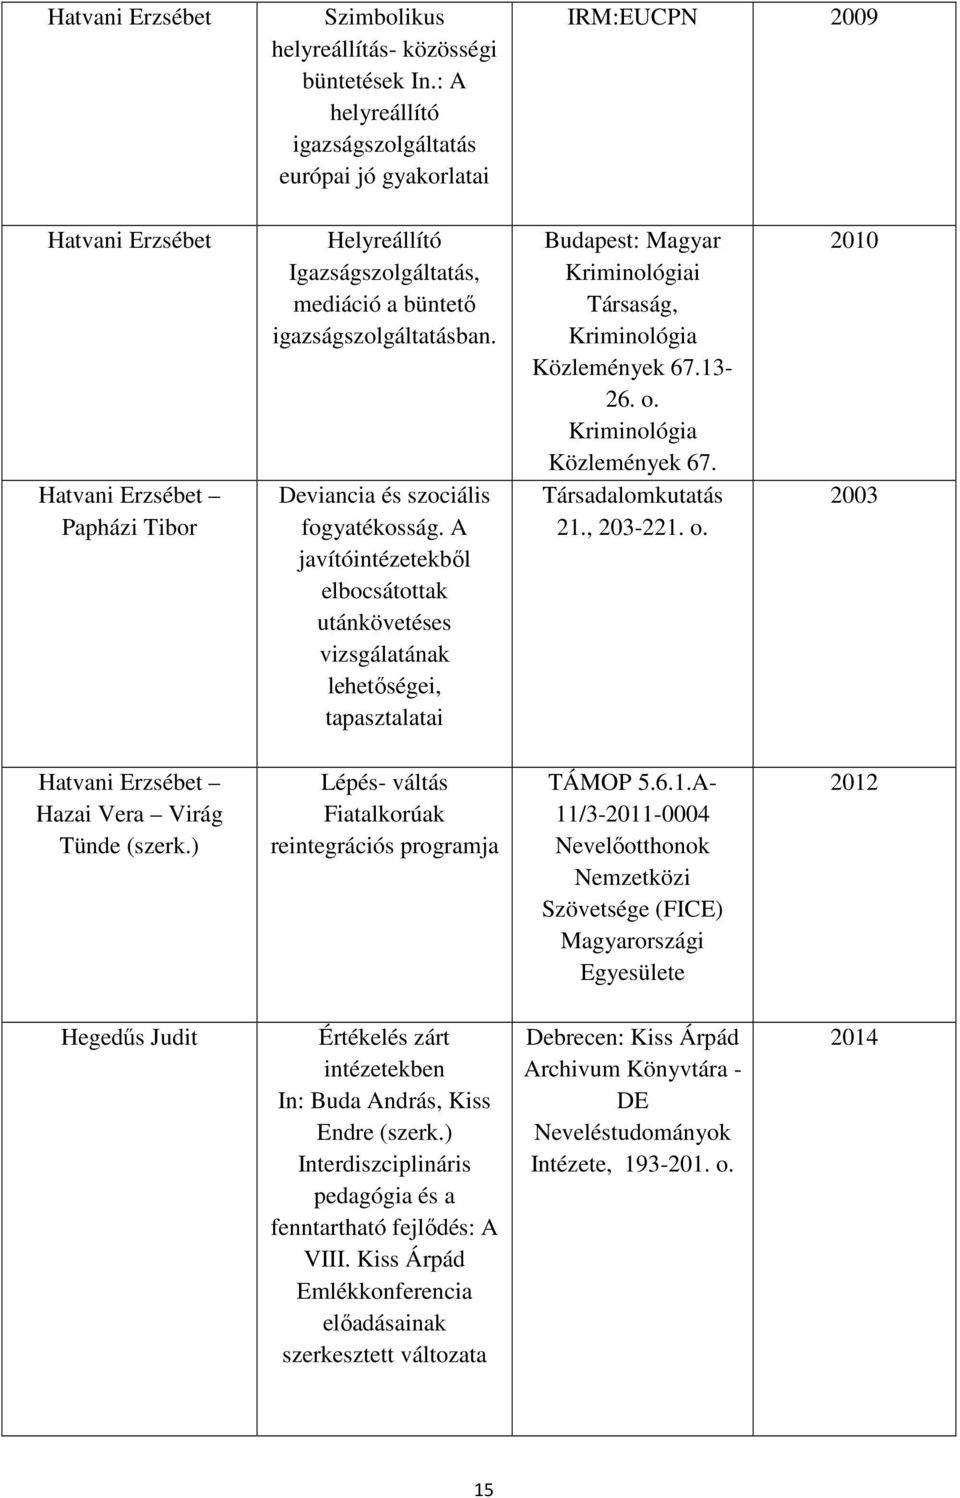 A javítóintézeti nevelésre vonatkozó és kapcsolódó szakirodalom jegyzéke.  Szerzők: dr. Hatvani Erzsébet Dr. Hegedűs Judit, PhD - PDF Free Download